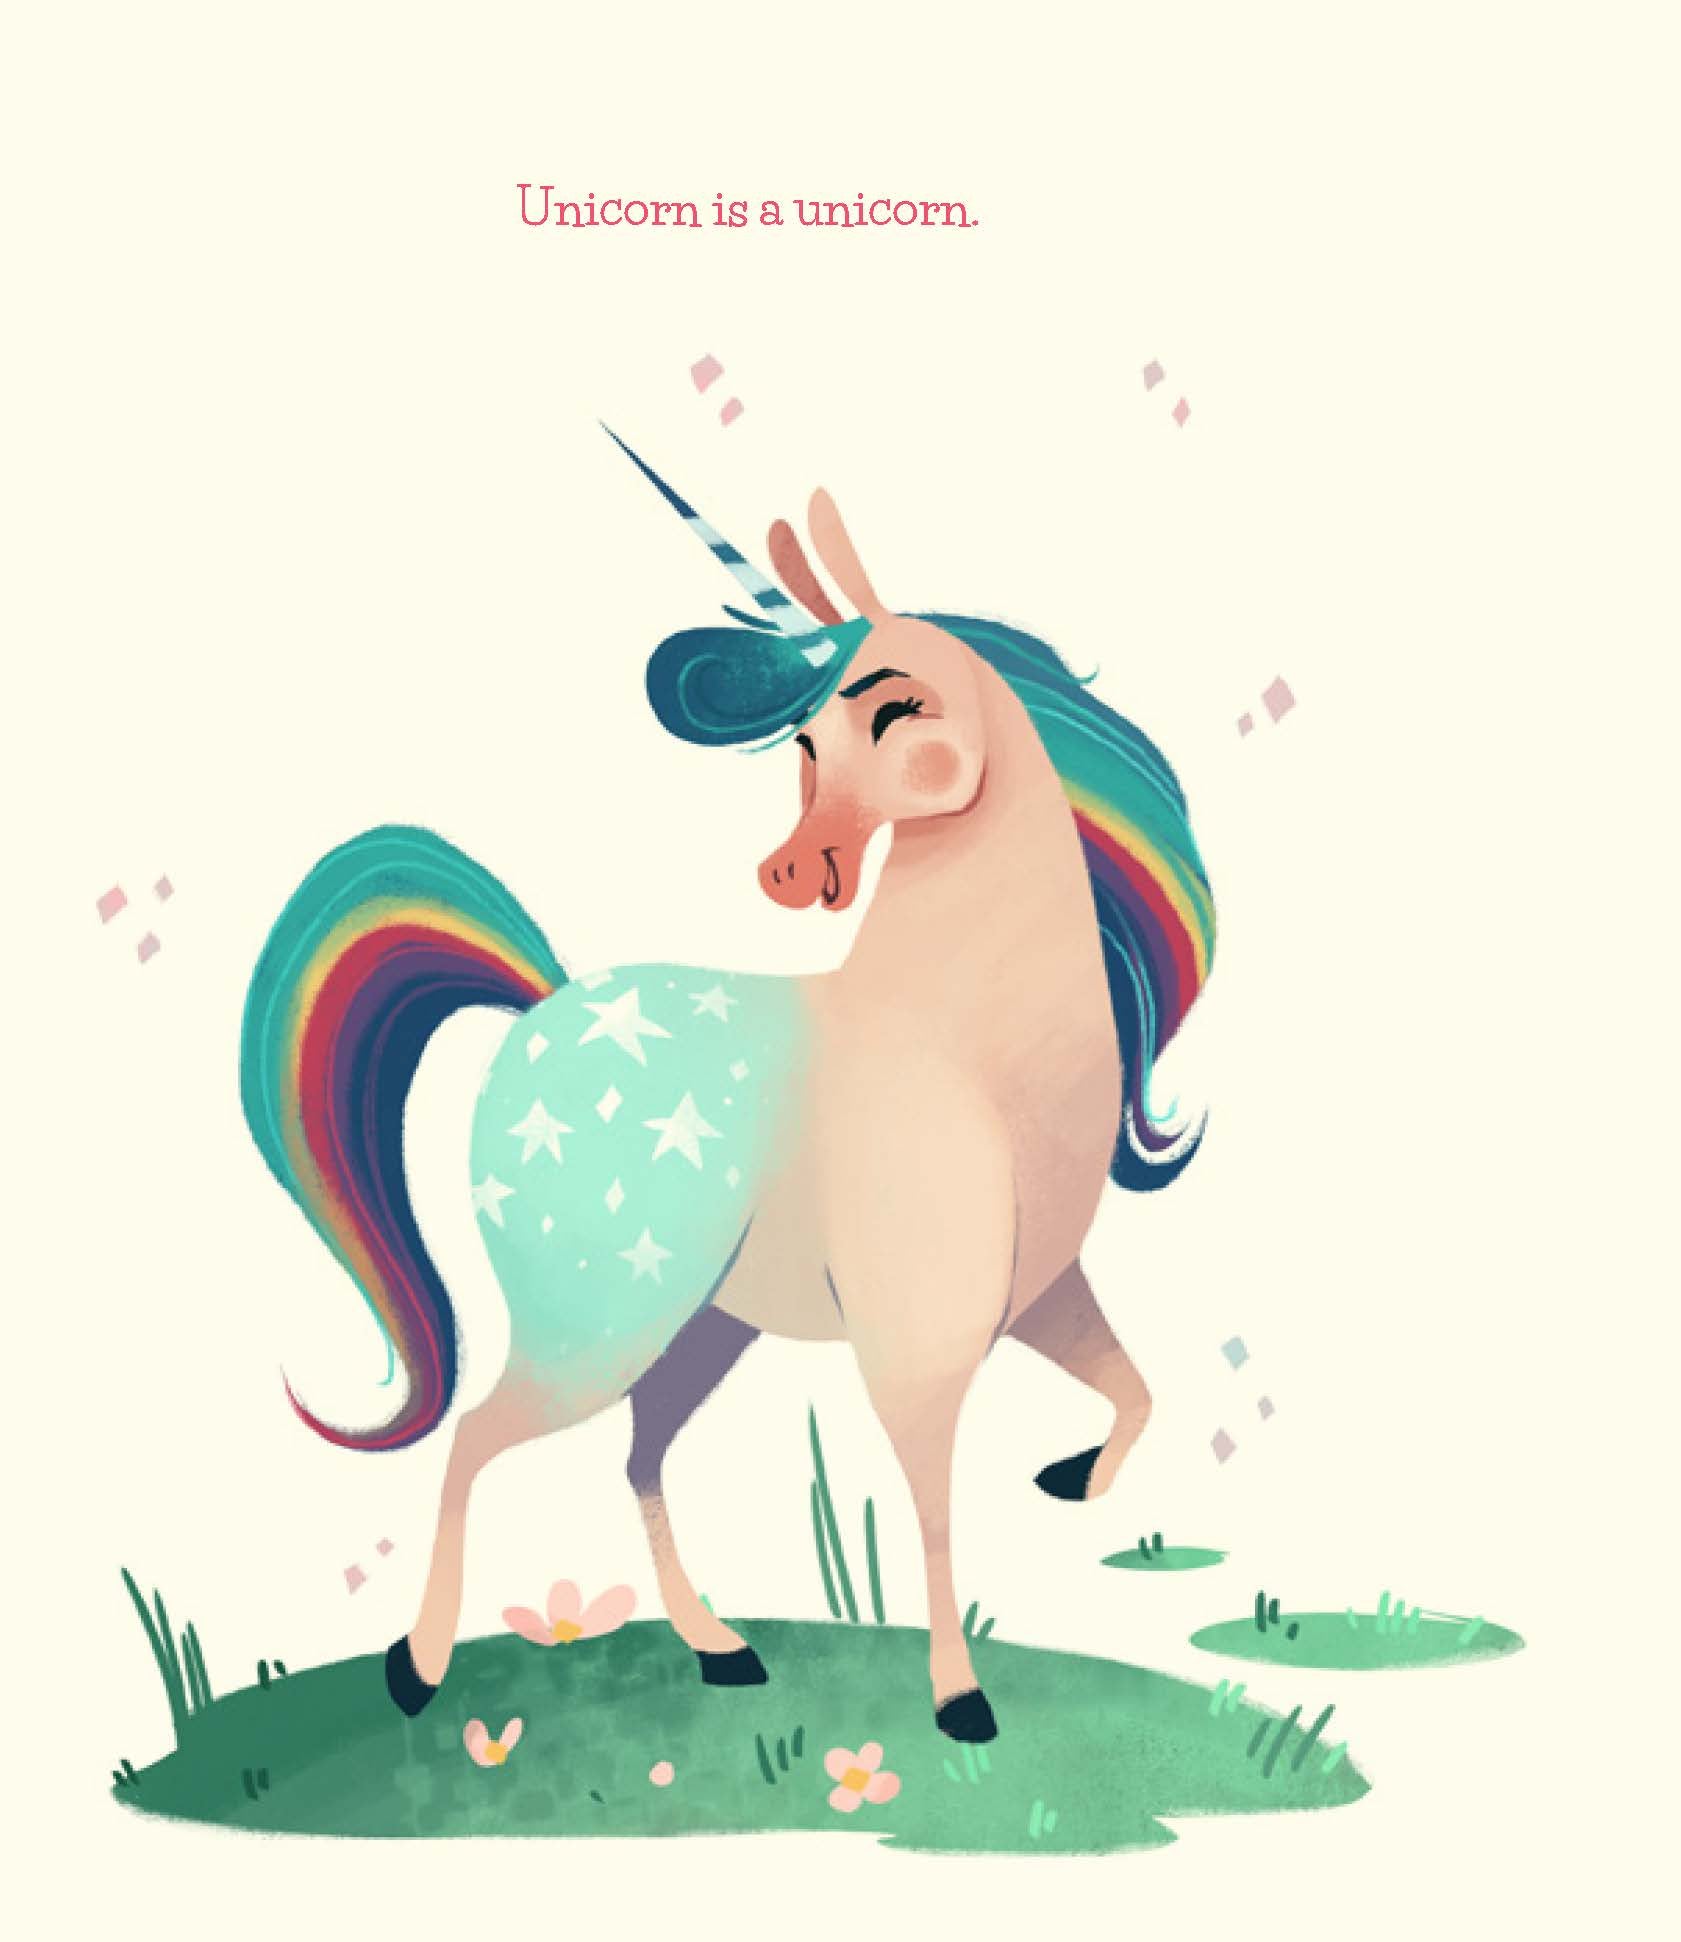 Unicorn (and Horse) - Make Momentos